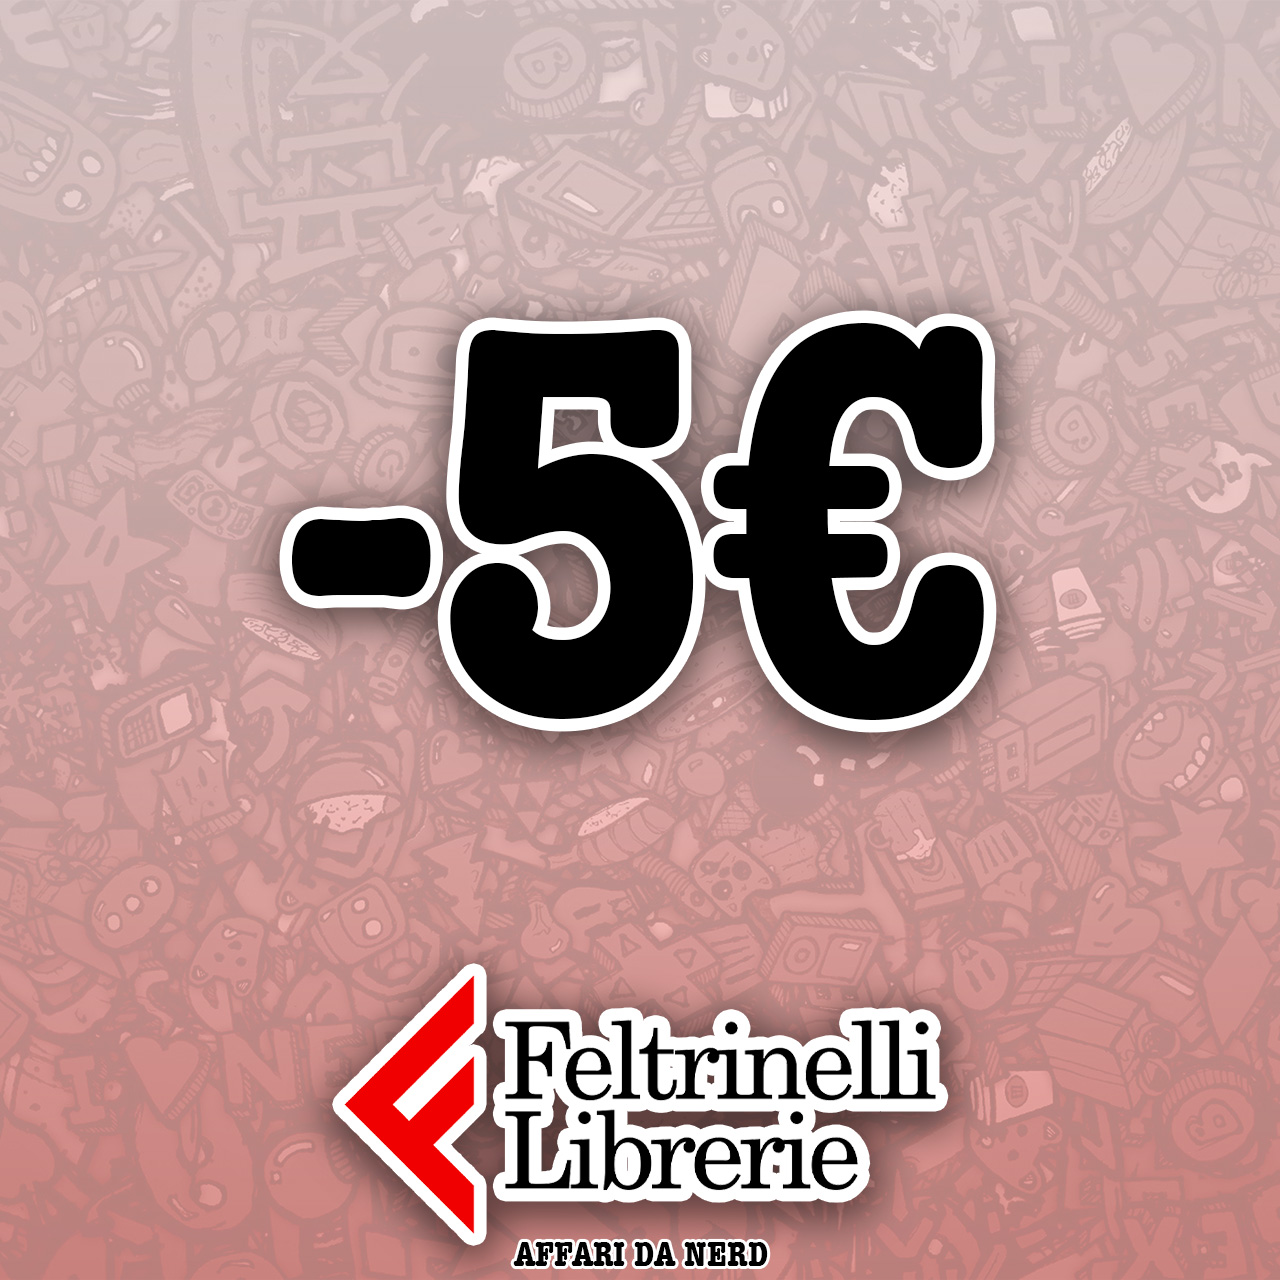 5€ di sconto con una spesa minima di 50€